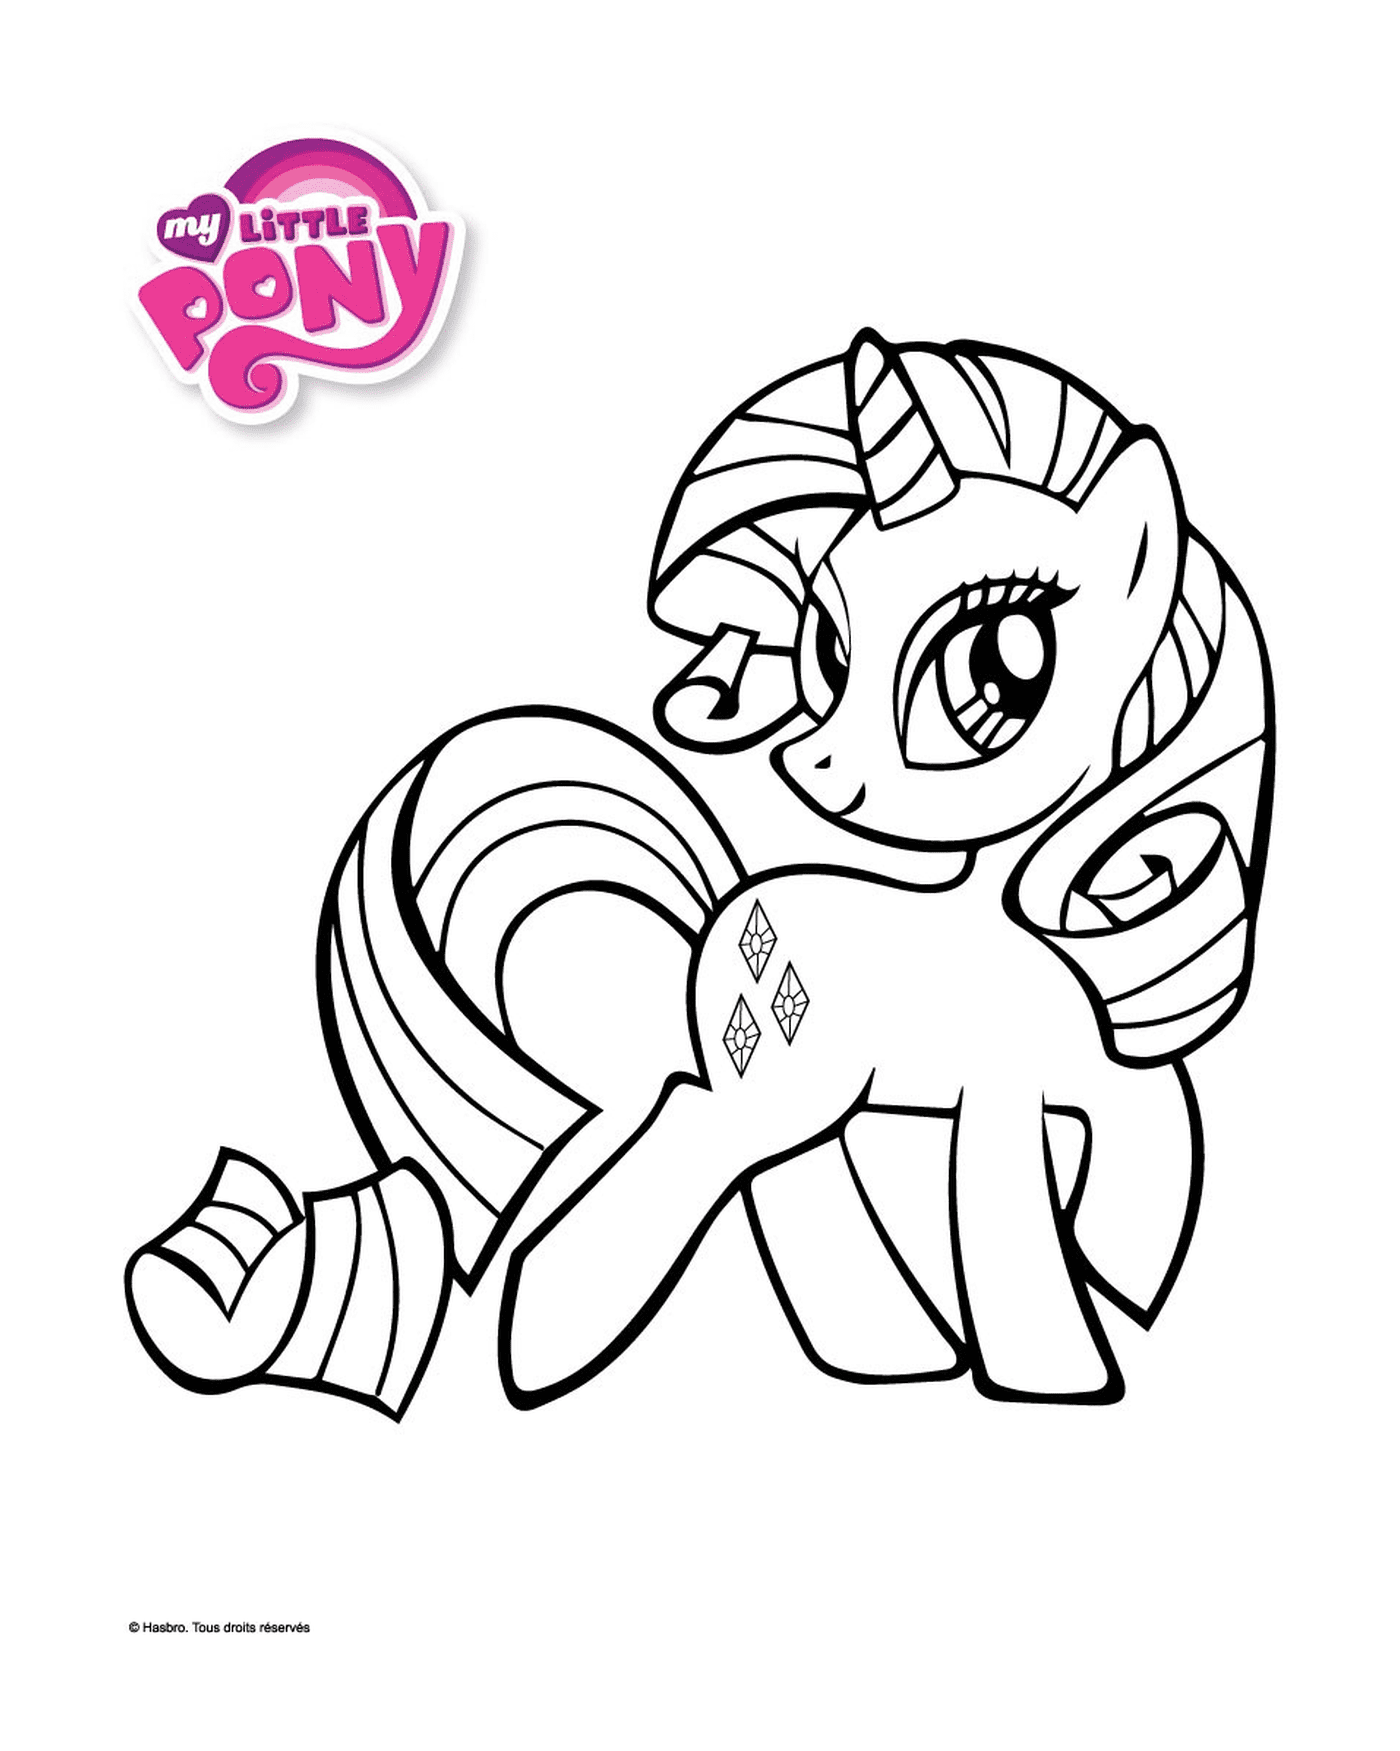  My Little Pony, carino con bel nastro 